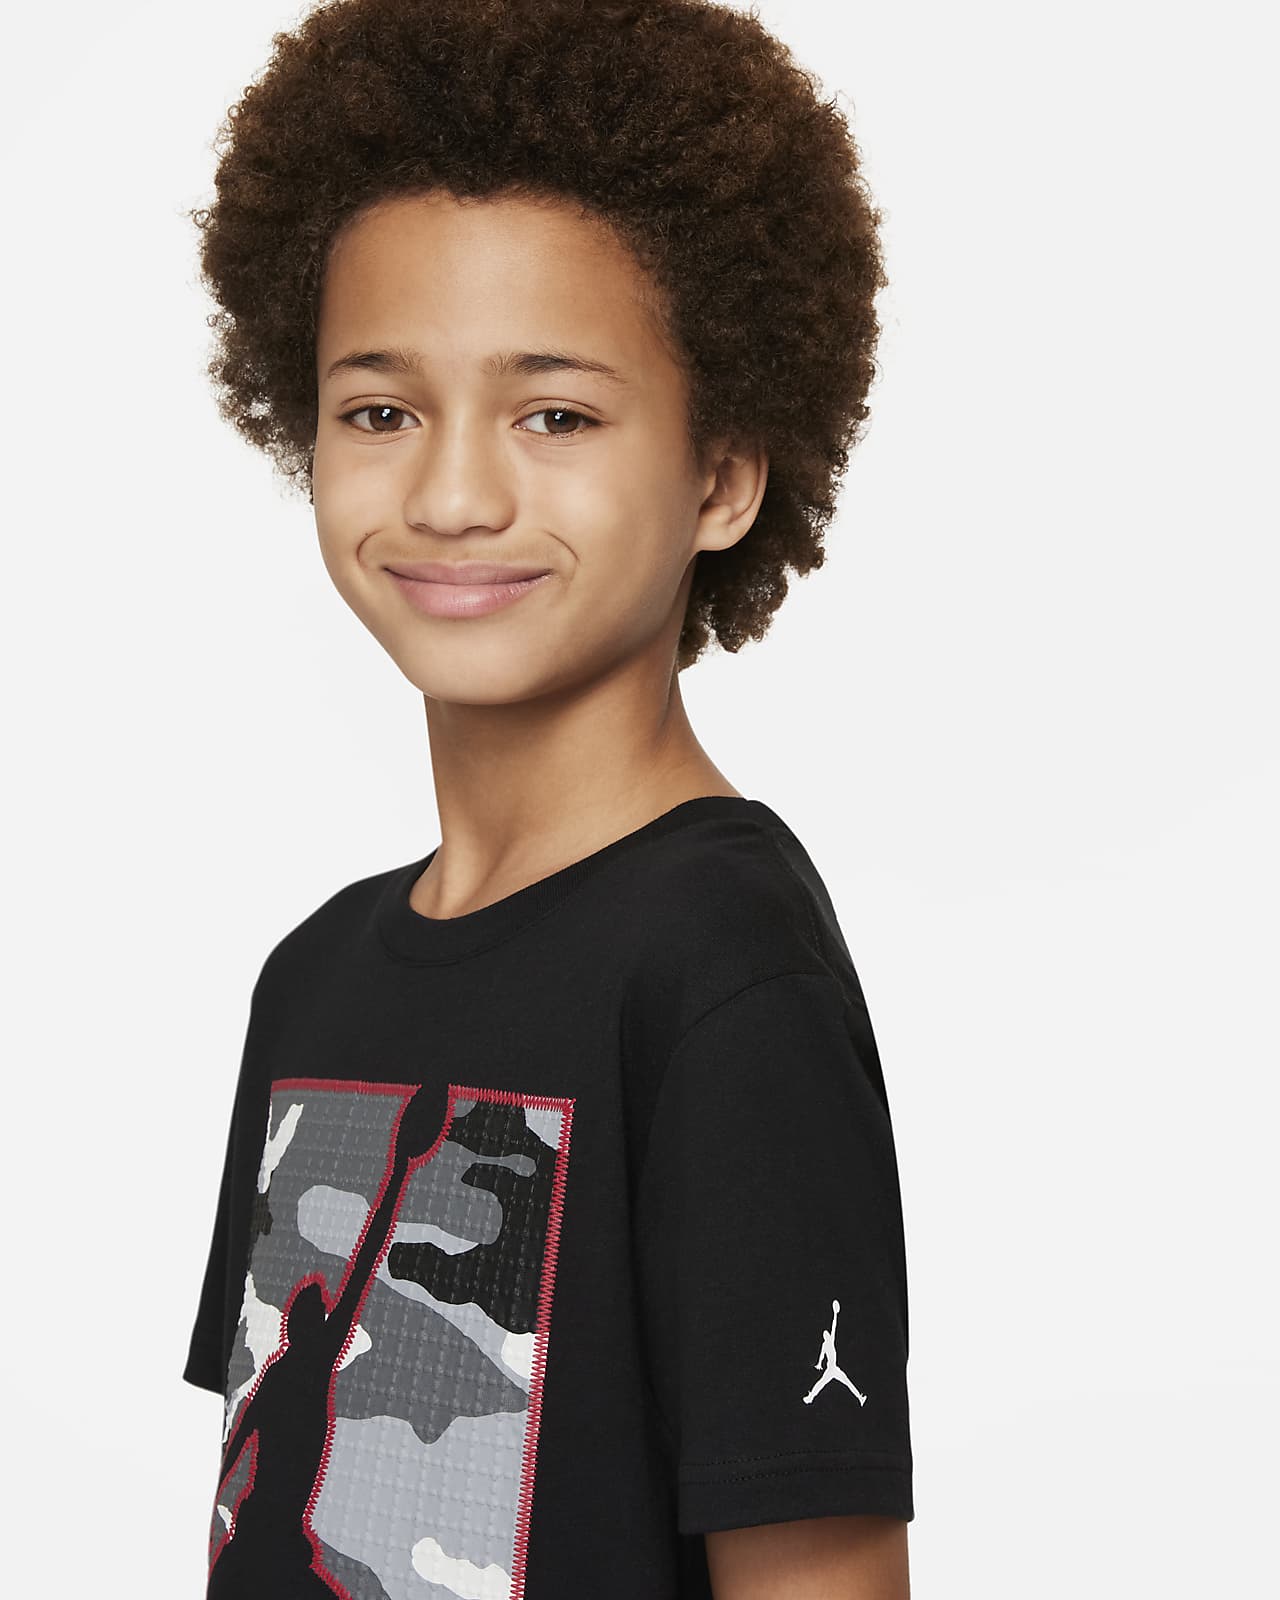 Jordan Big Kids' Jumpman Standard Issue T-Shirt. Nike.com